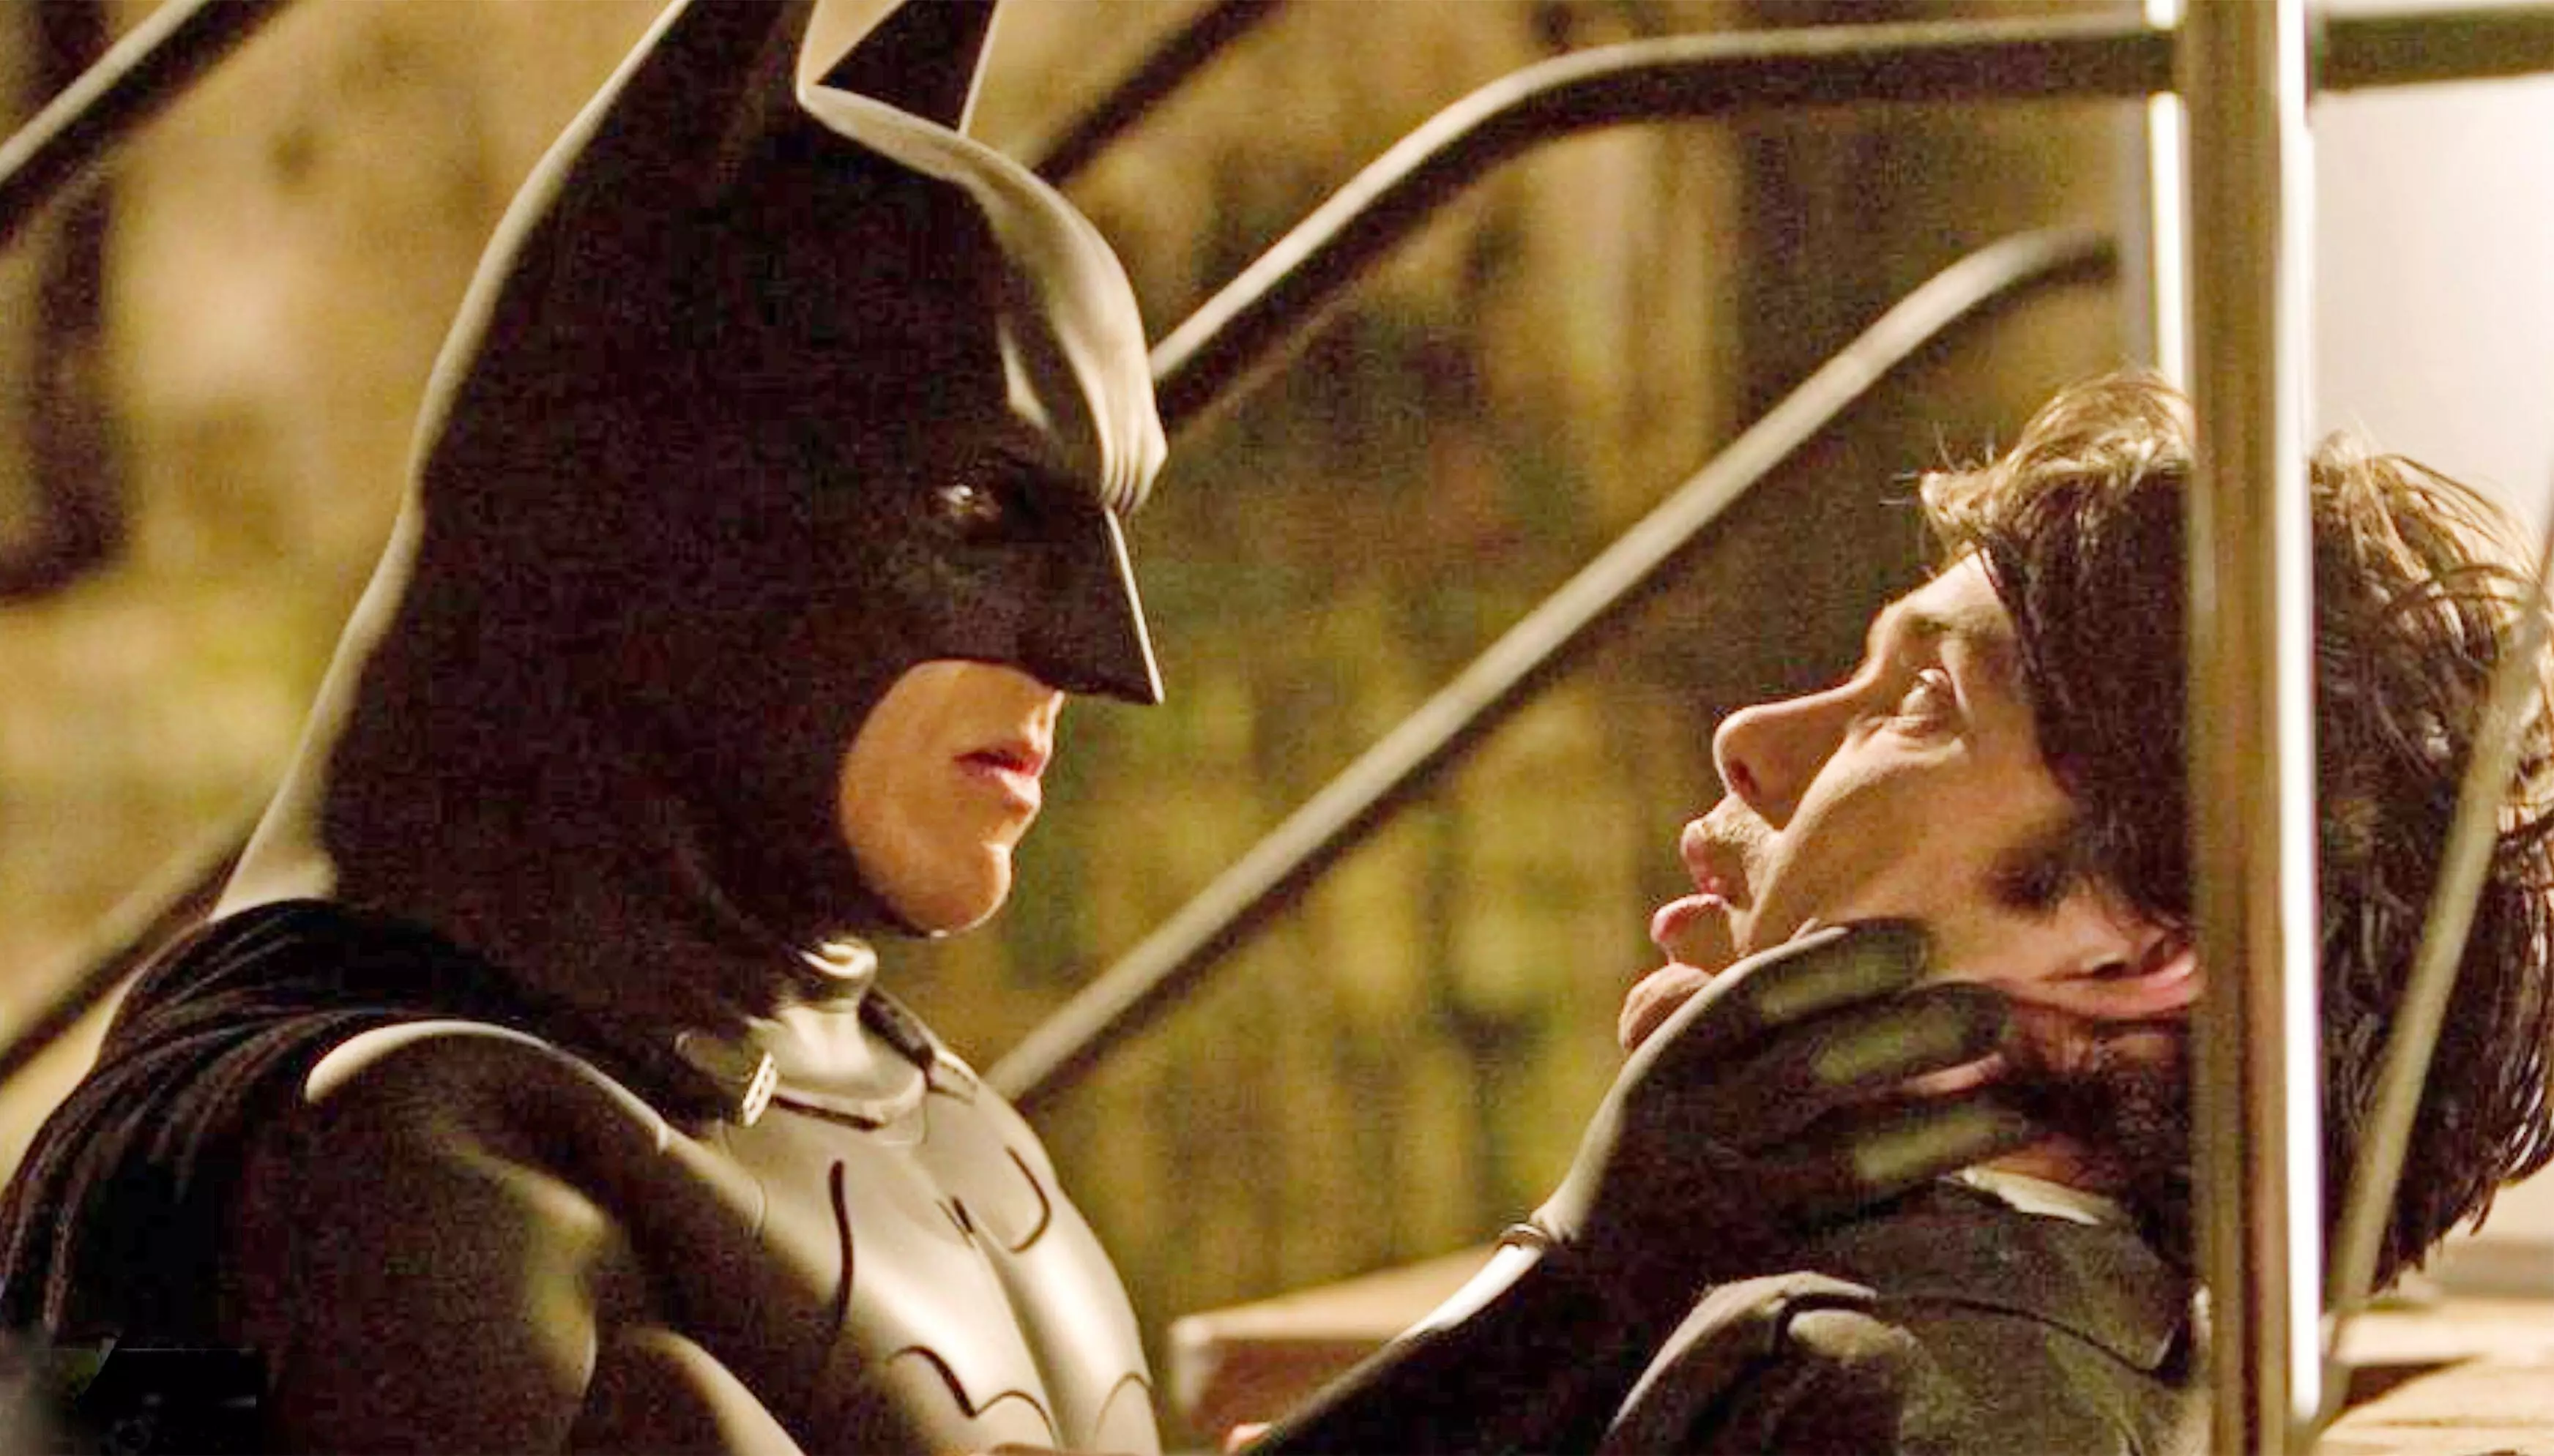 Murphy in Nolan's Batman Begins.